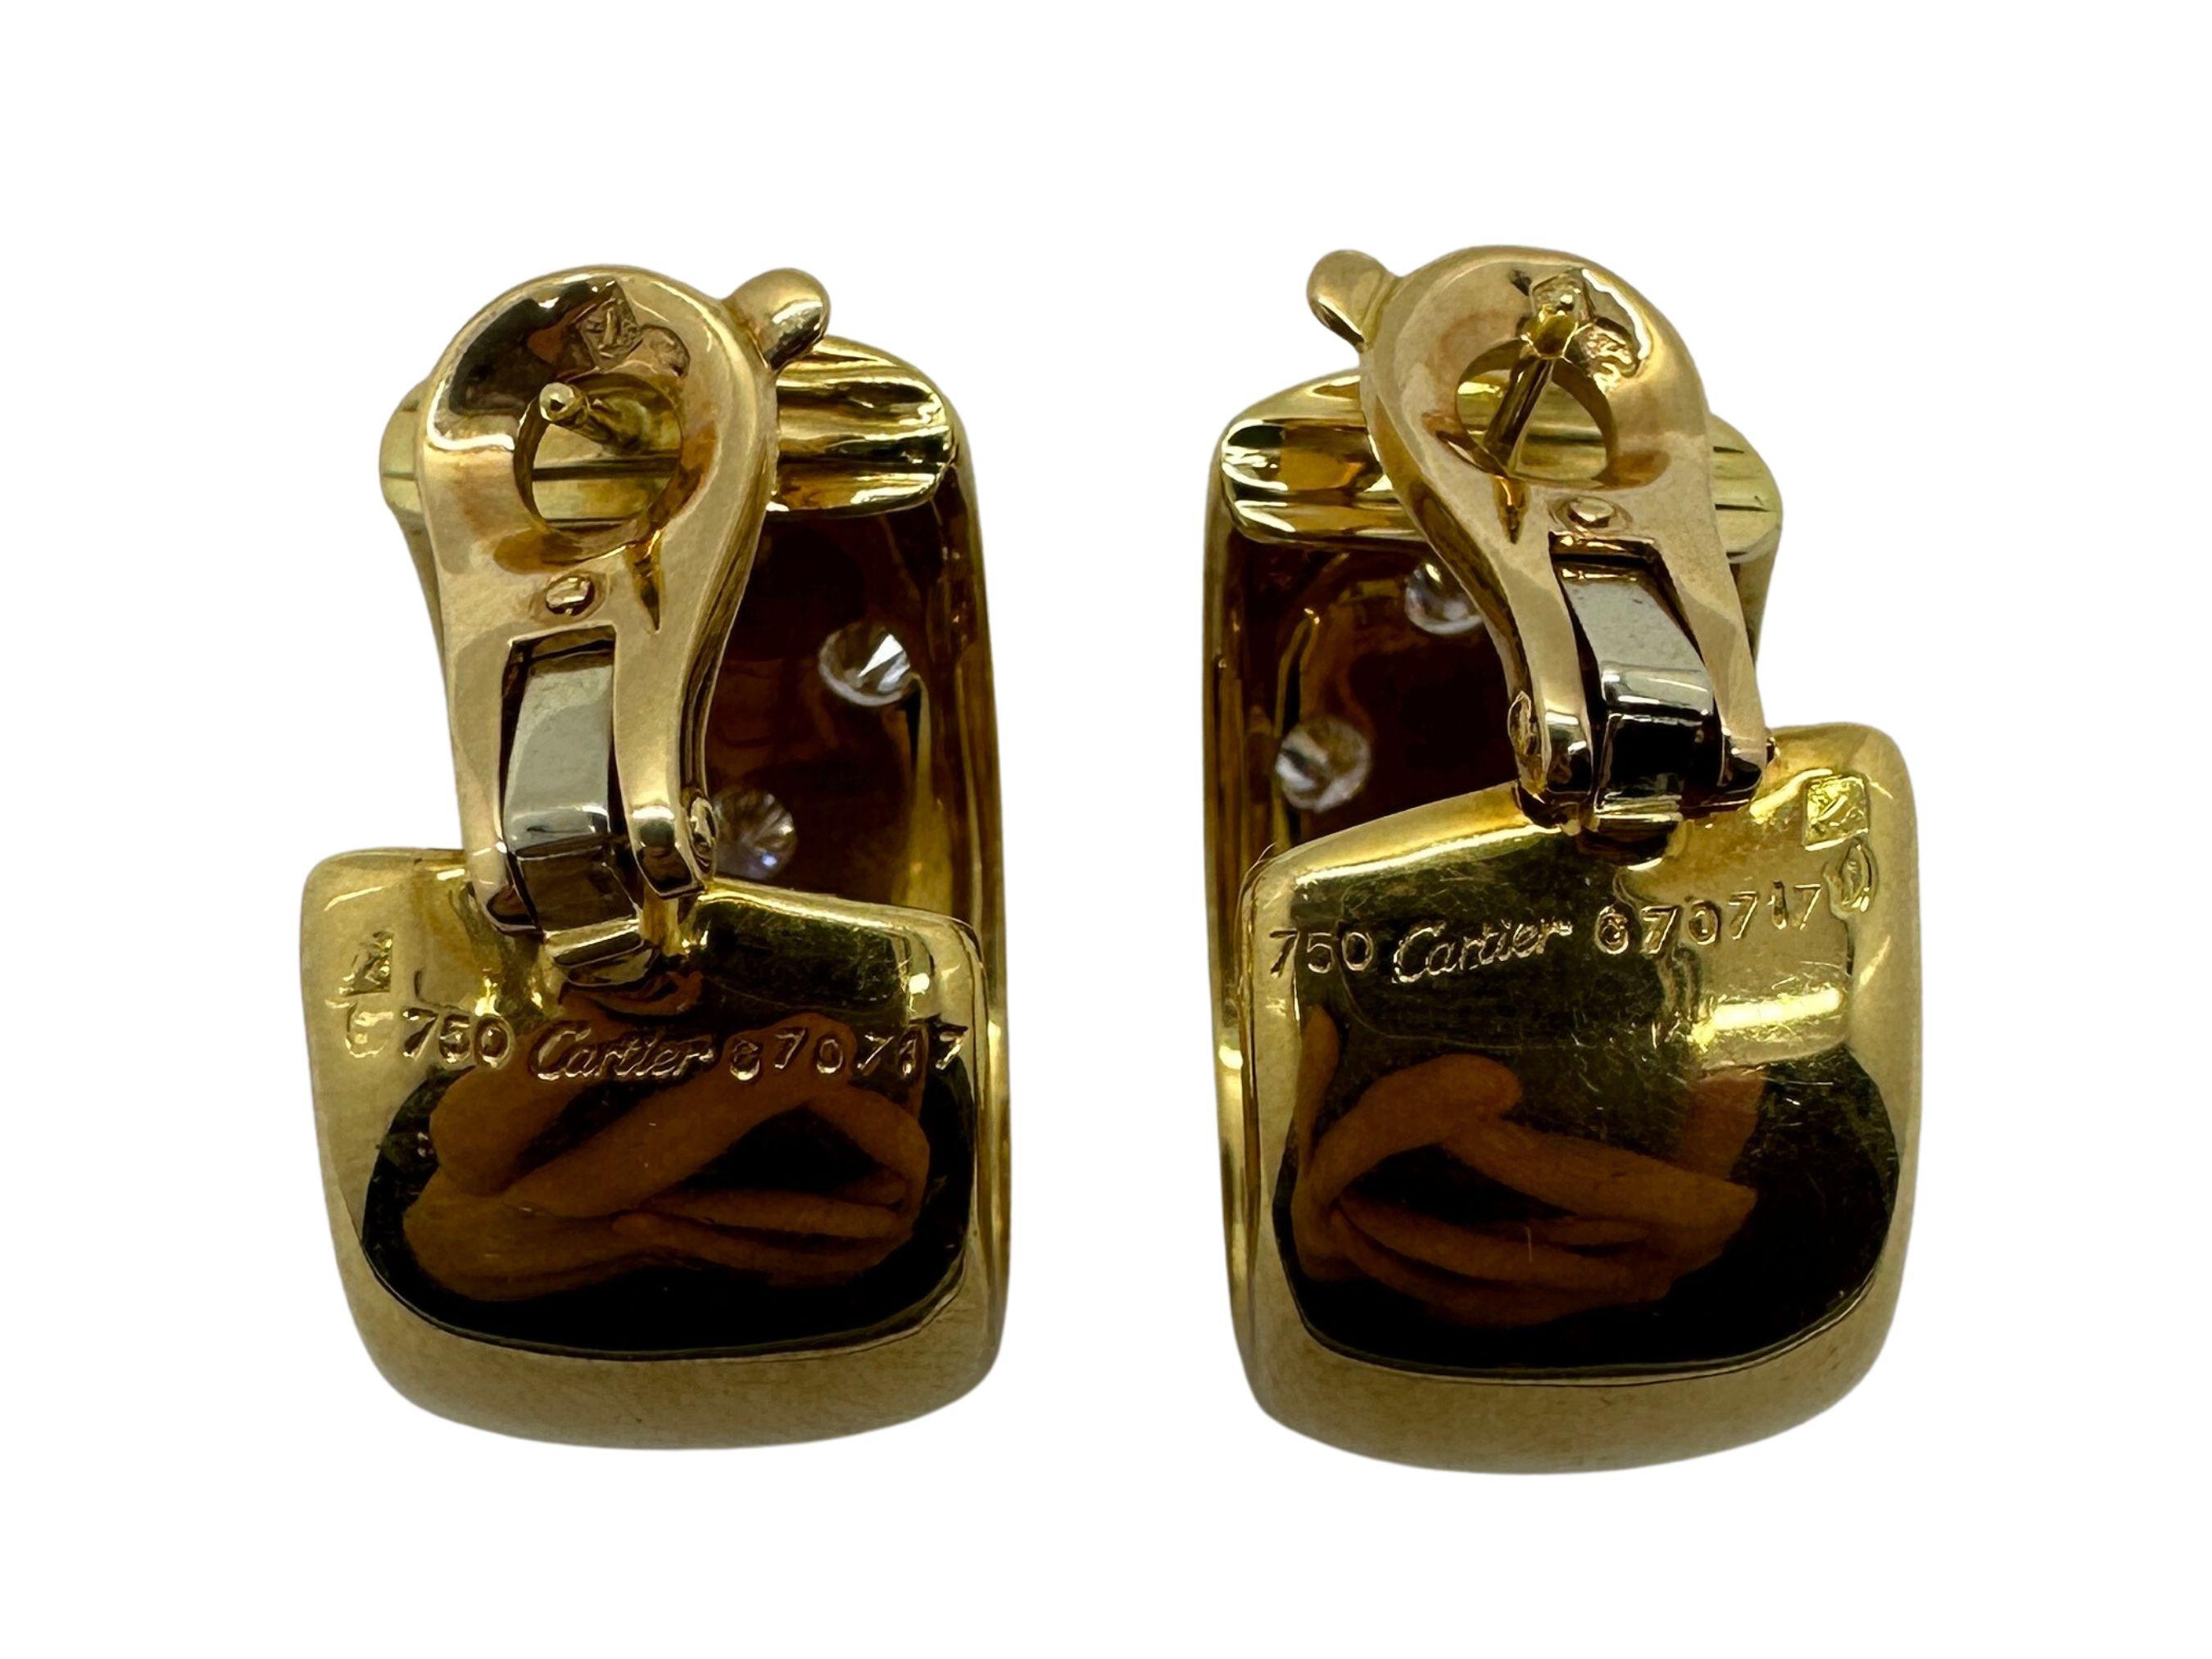 Gönnen Sie sich die ikonische Eleganz von Cartier mit diesen atemberaubenden Estate Gold- und Diamant-Reifen. Diese Ohrringe sind in gutem Zustand mit geringen altersbedingten Abnutzungserscheinungen und zeugen von Cartiers zeitlosem Design.

Diese